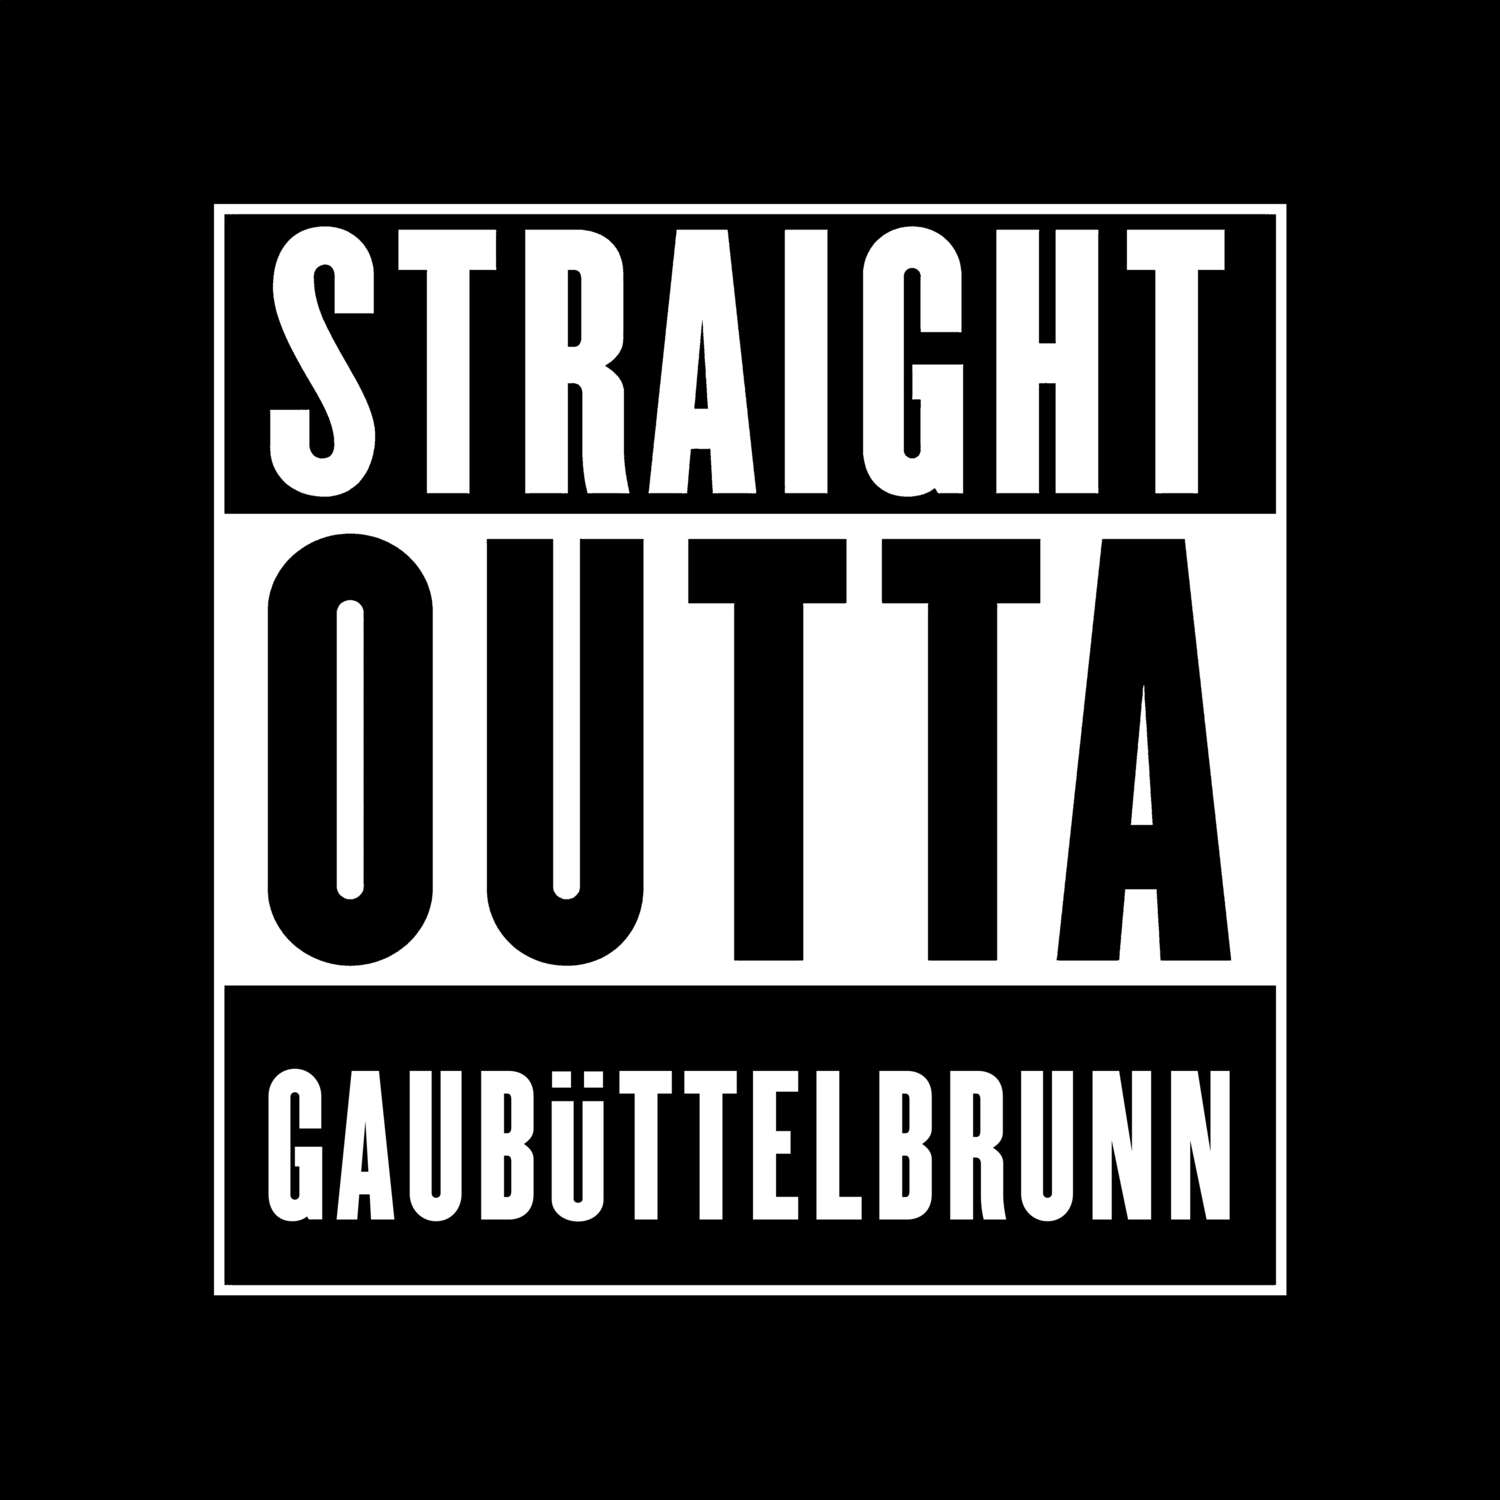 Gaubüttelbrunn T-Shirt »Straight Outta«